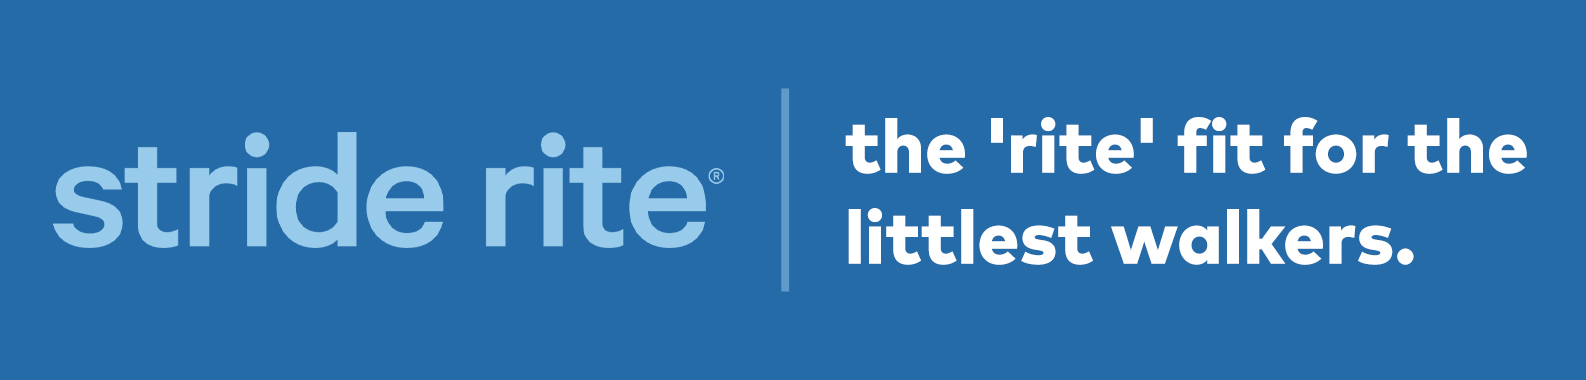 Stride Rite brand header image